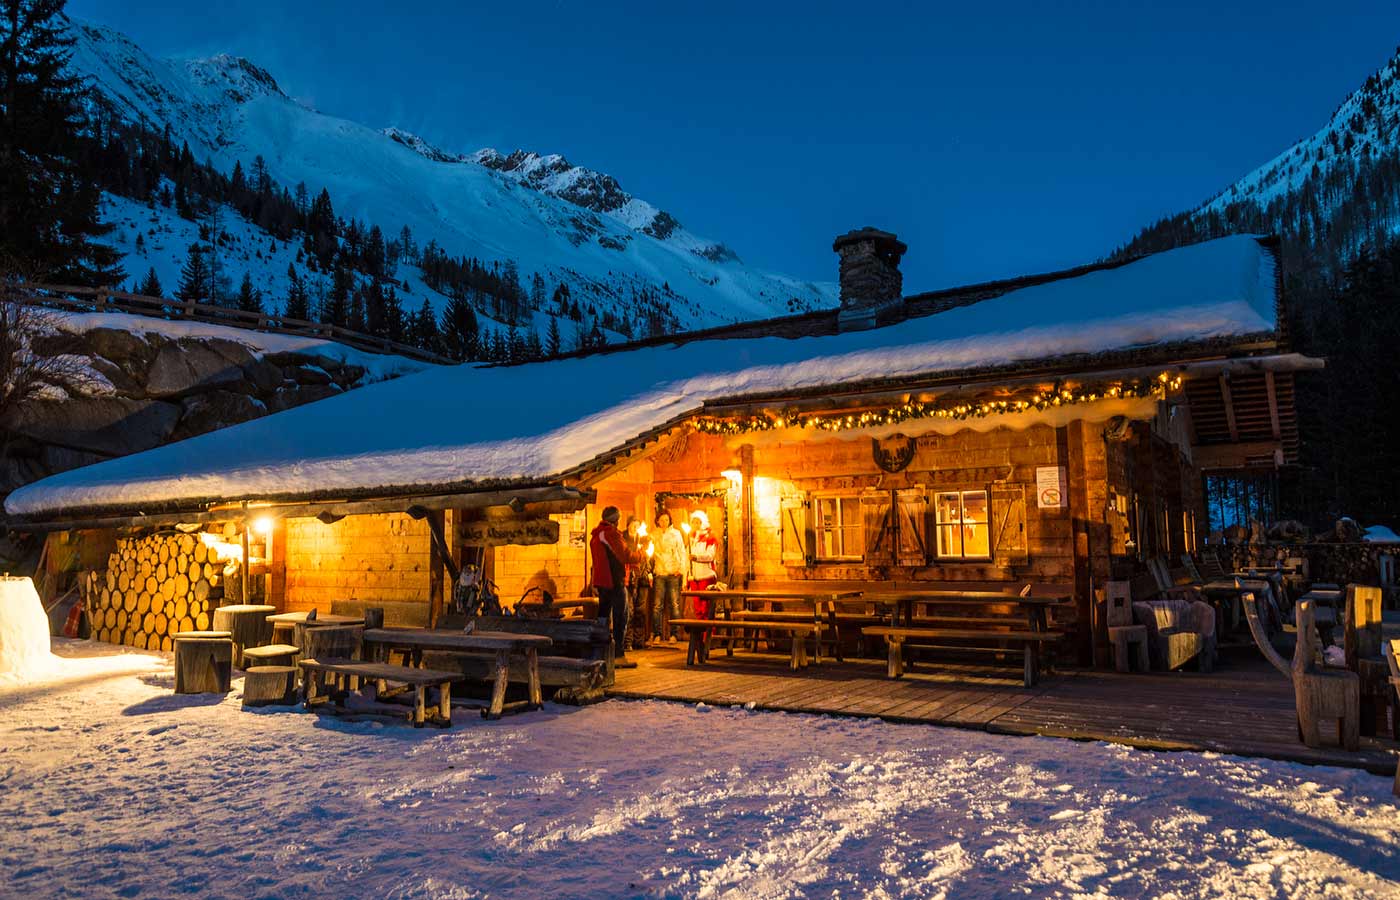 Veduta notturna di una baita di montagna in legno illuminata con la neve sul tetto e tre persone che parlano fuori dalla porta